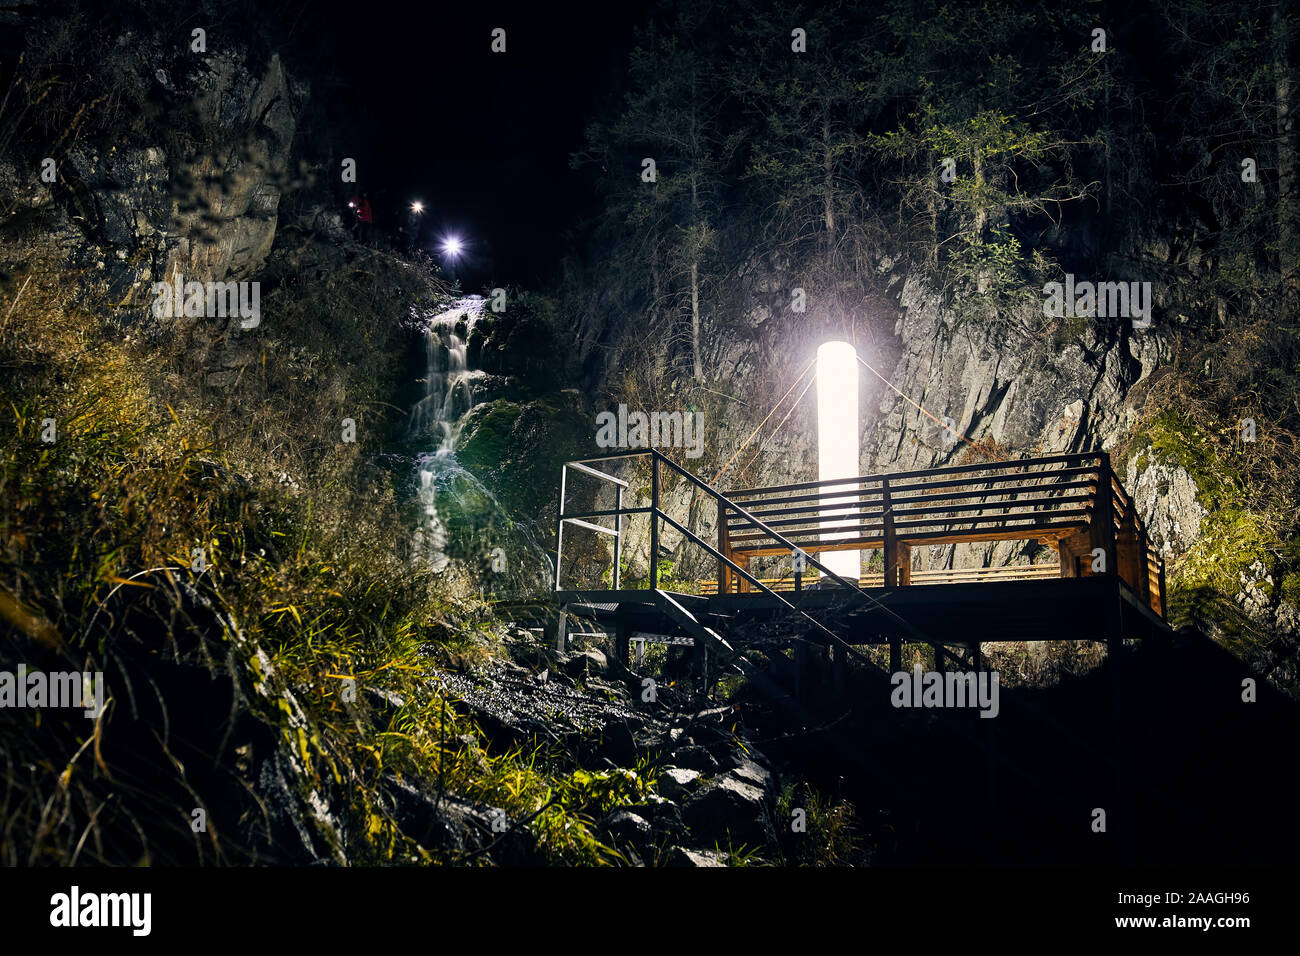 Grande lampe Led allumé à plate-forme en bois pour le camping près de cascade dans les montagnes sous le ciel de nuit avec des étoiles Banque D'Images